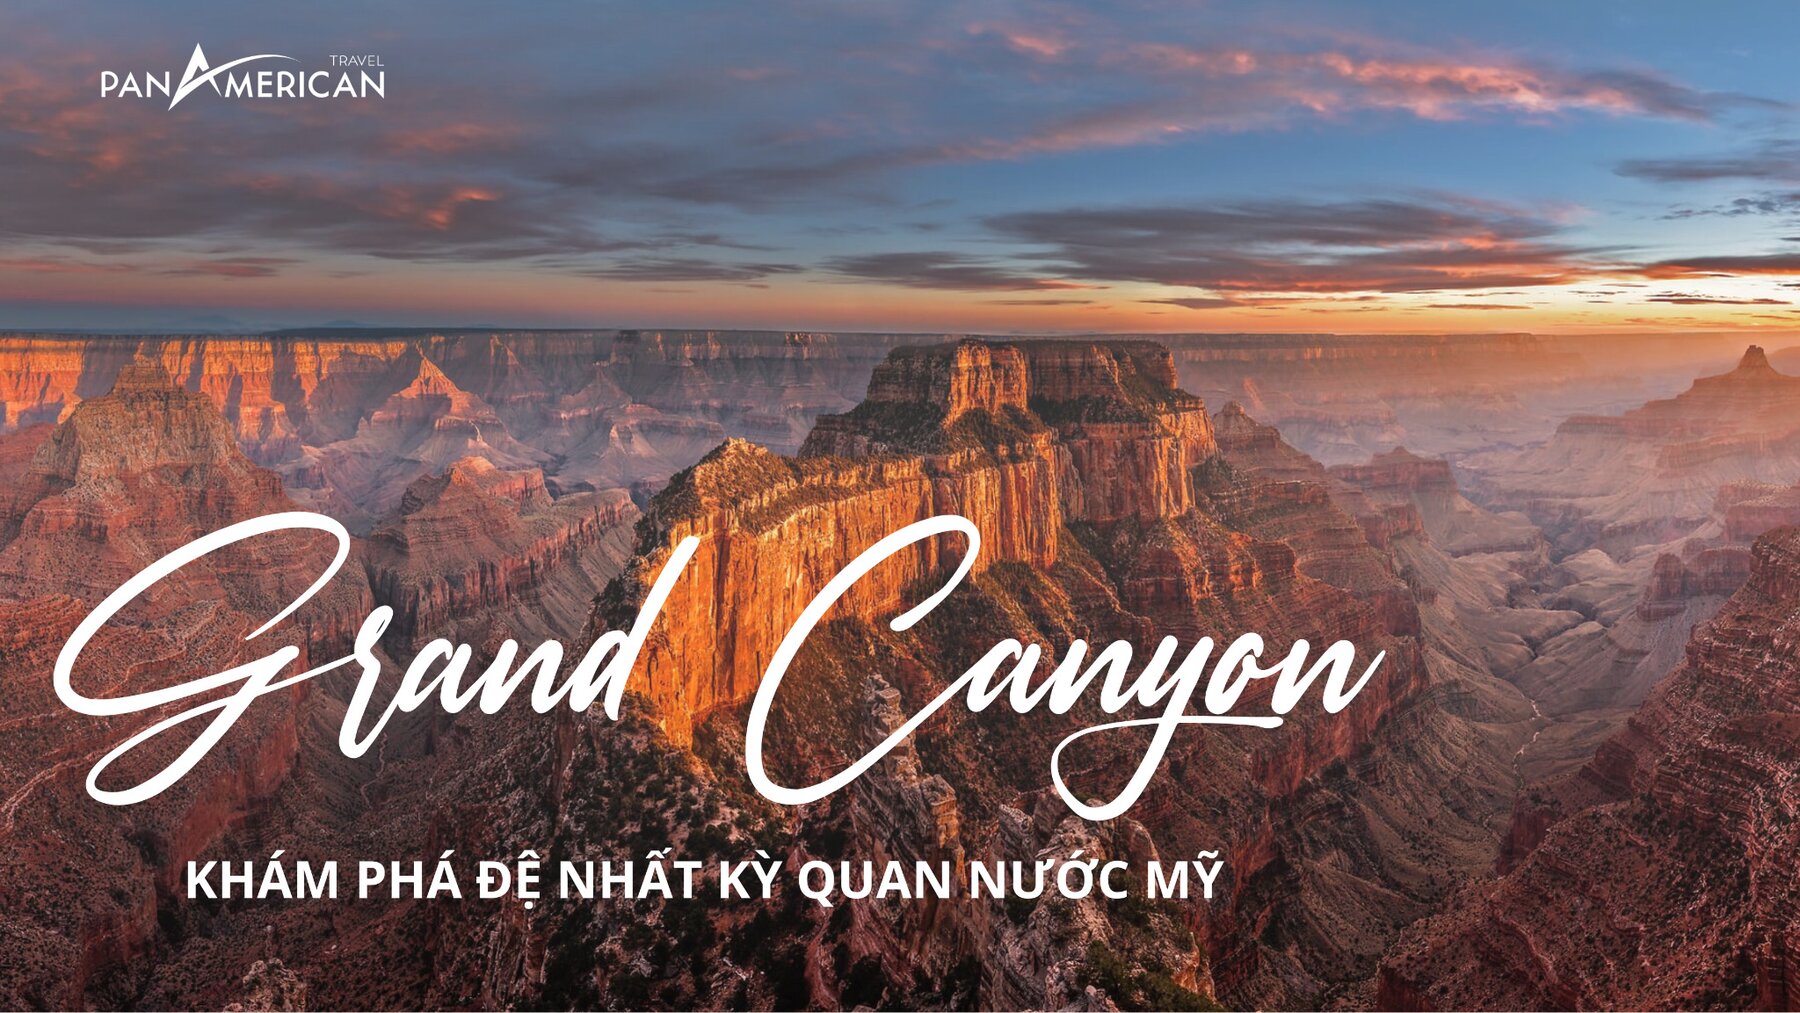 Khám phá Grand Canyon - đệ nhất kỳ quan nước Mỹ